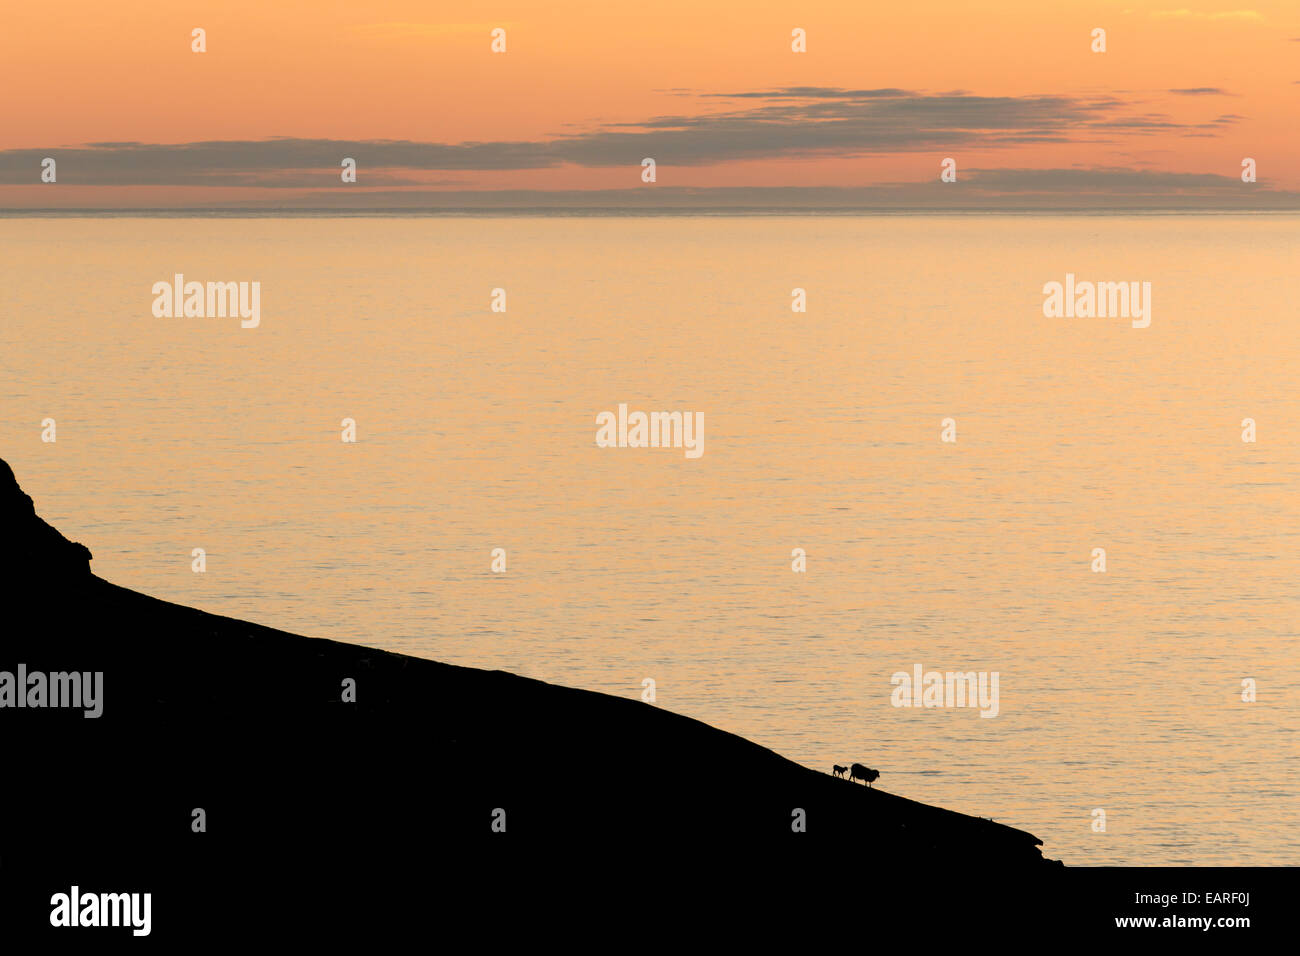 Silhouette von einem Gebirgskamm mit Schafen vor dem Meer, Dänemark, Färöer Inseln, Kalsoy, Norðoyar Stockfoto